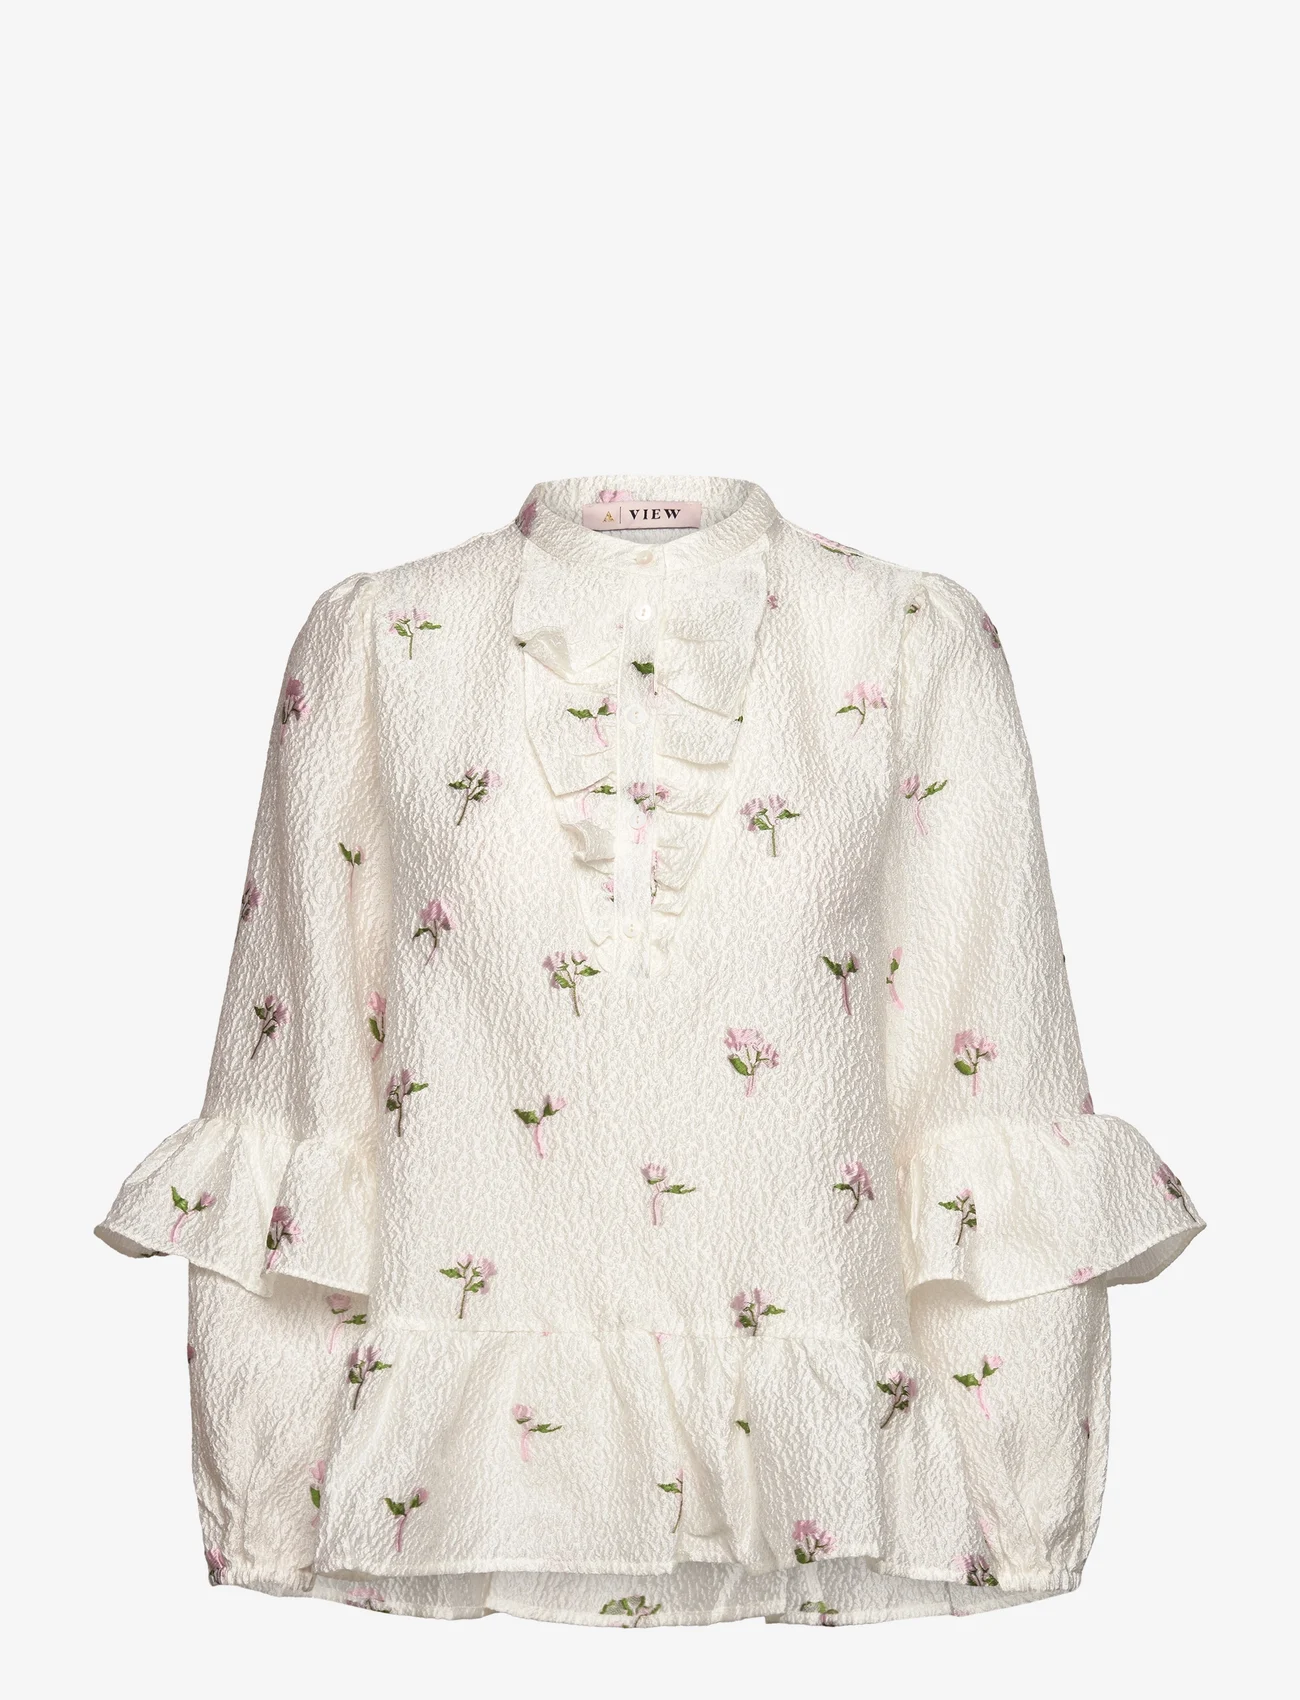 A-View - Selino blouse - langærmede bluser - white/pink - 0